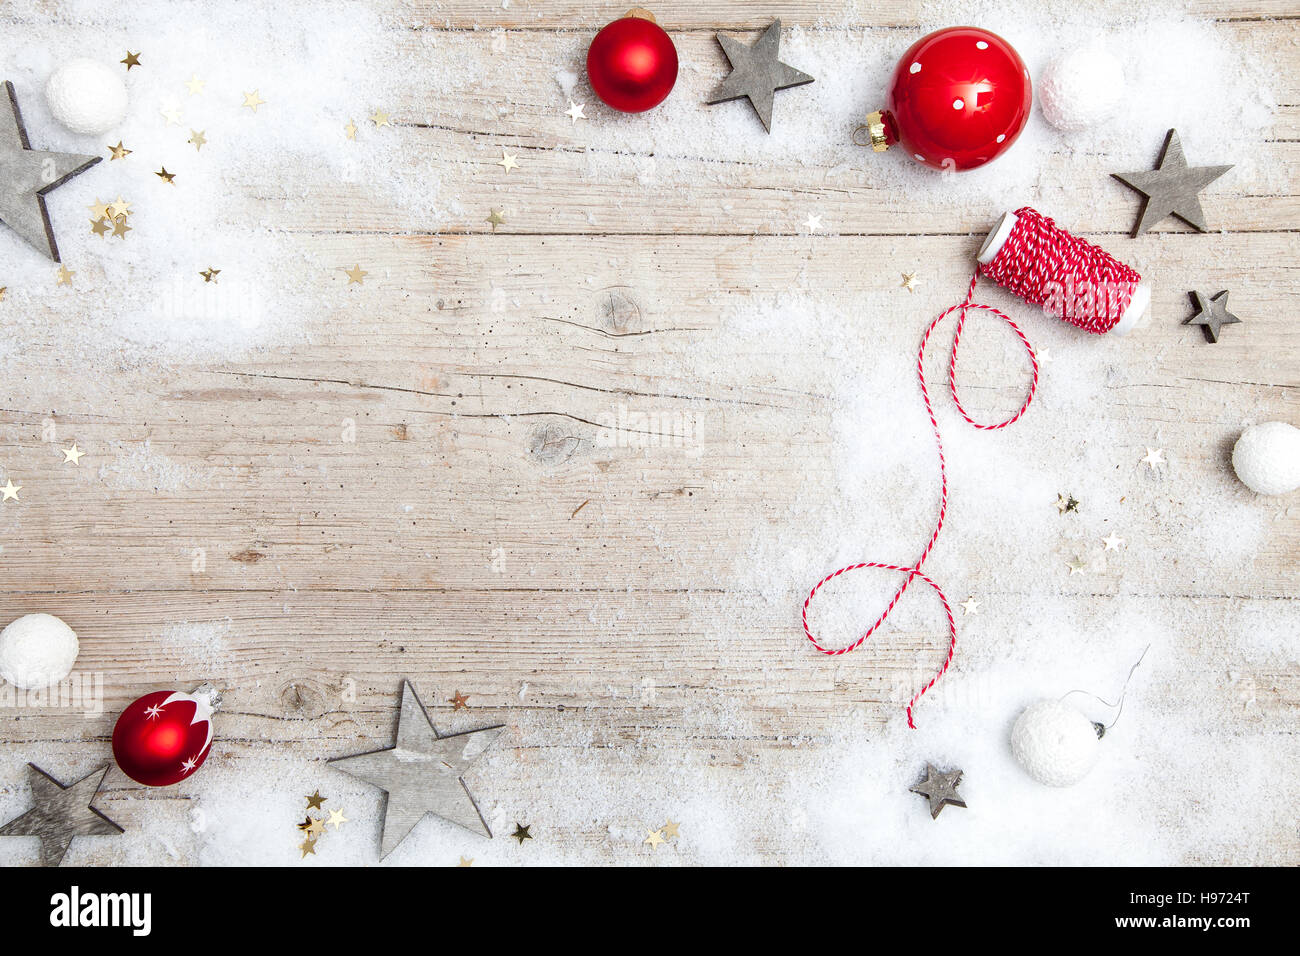 Weihnachtlicher grauer Holz Hintergrund mit Deko Stock Photo - Alamy